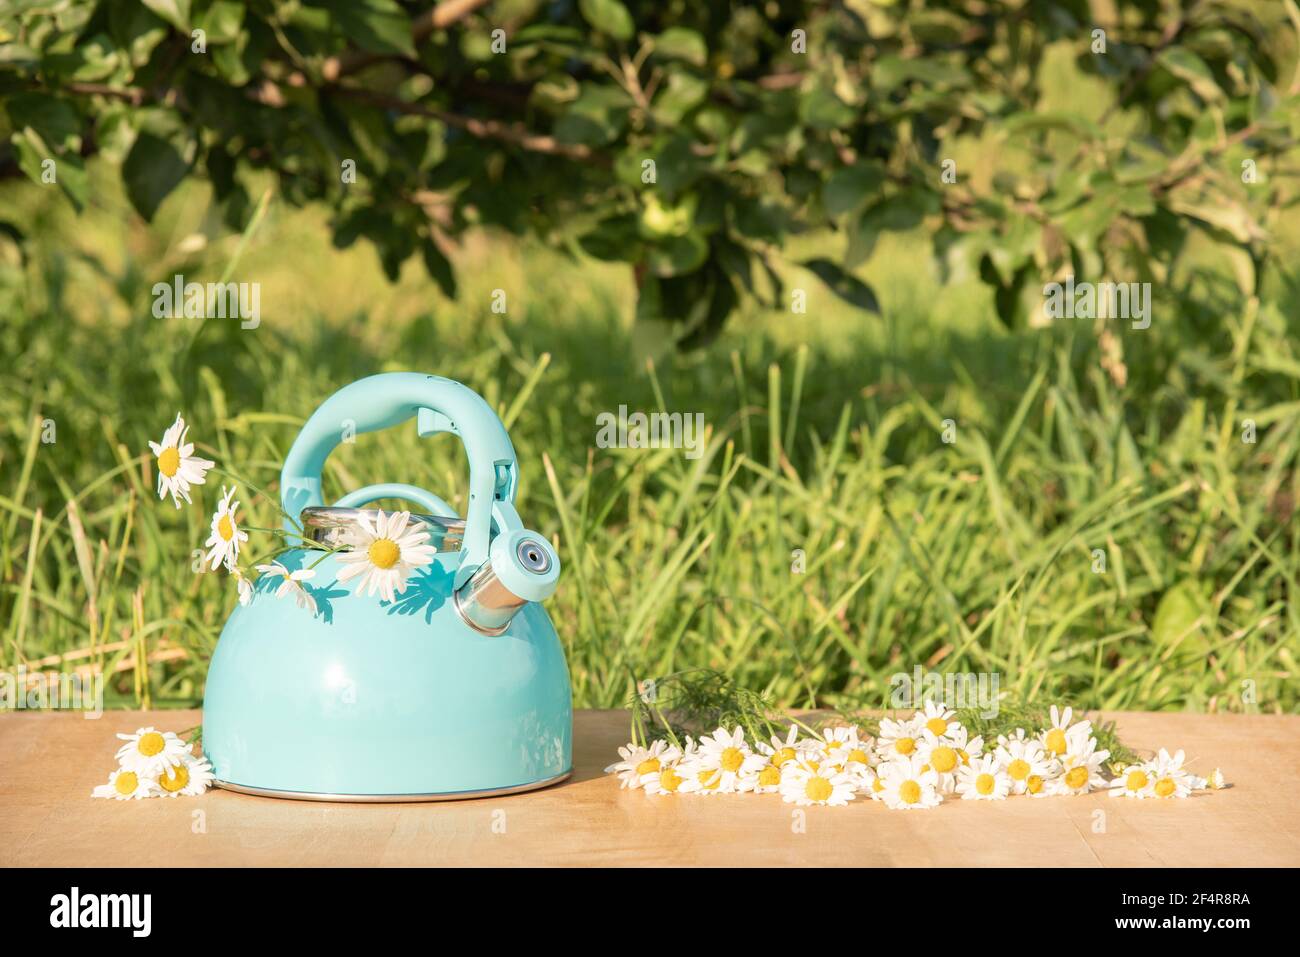 Belle vie d'été encore. Théière bleue avec un bouquet de pâquerettes blanches fraîches sur la table dans l'herbe verte Banque D'Images